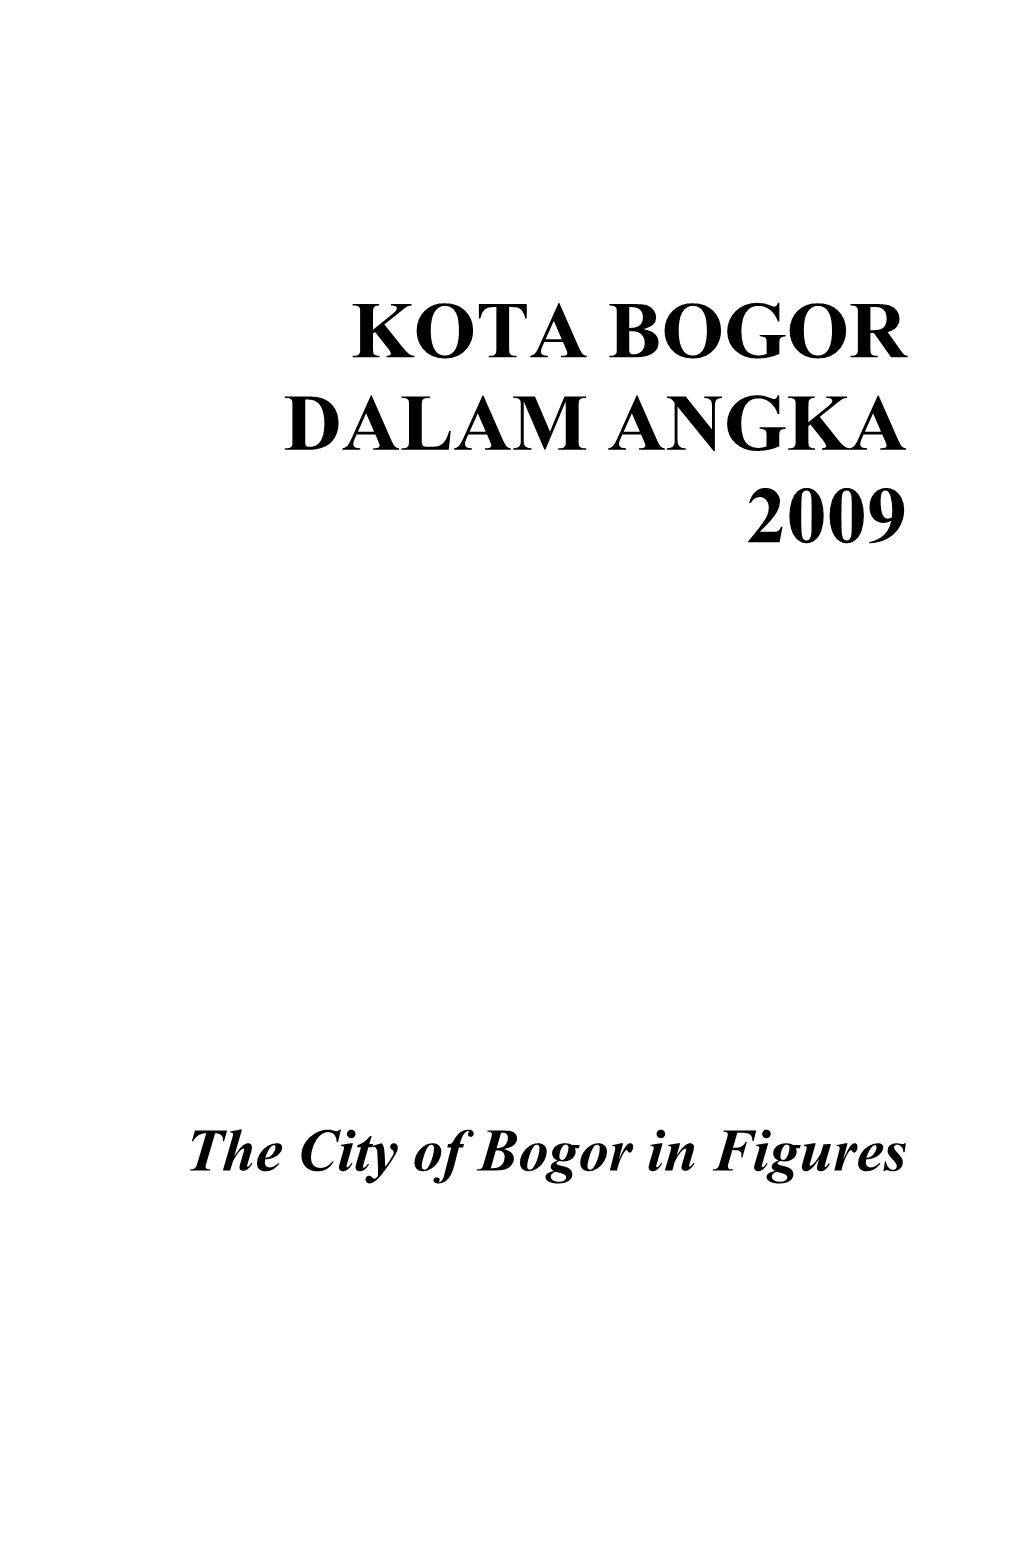 Kota Bogor Dalam Angka 2009